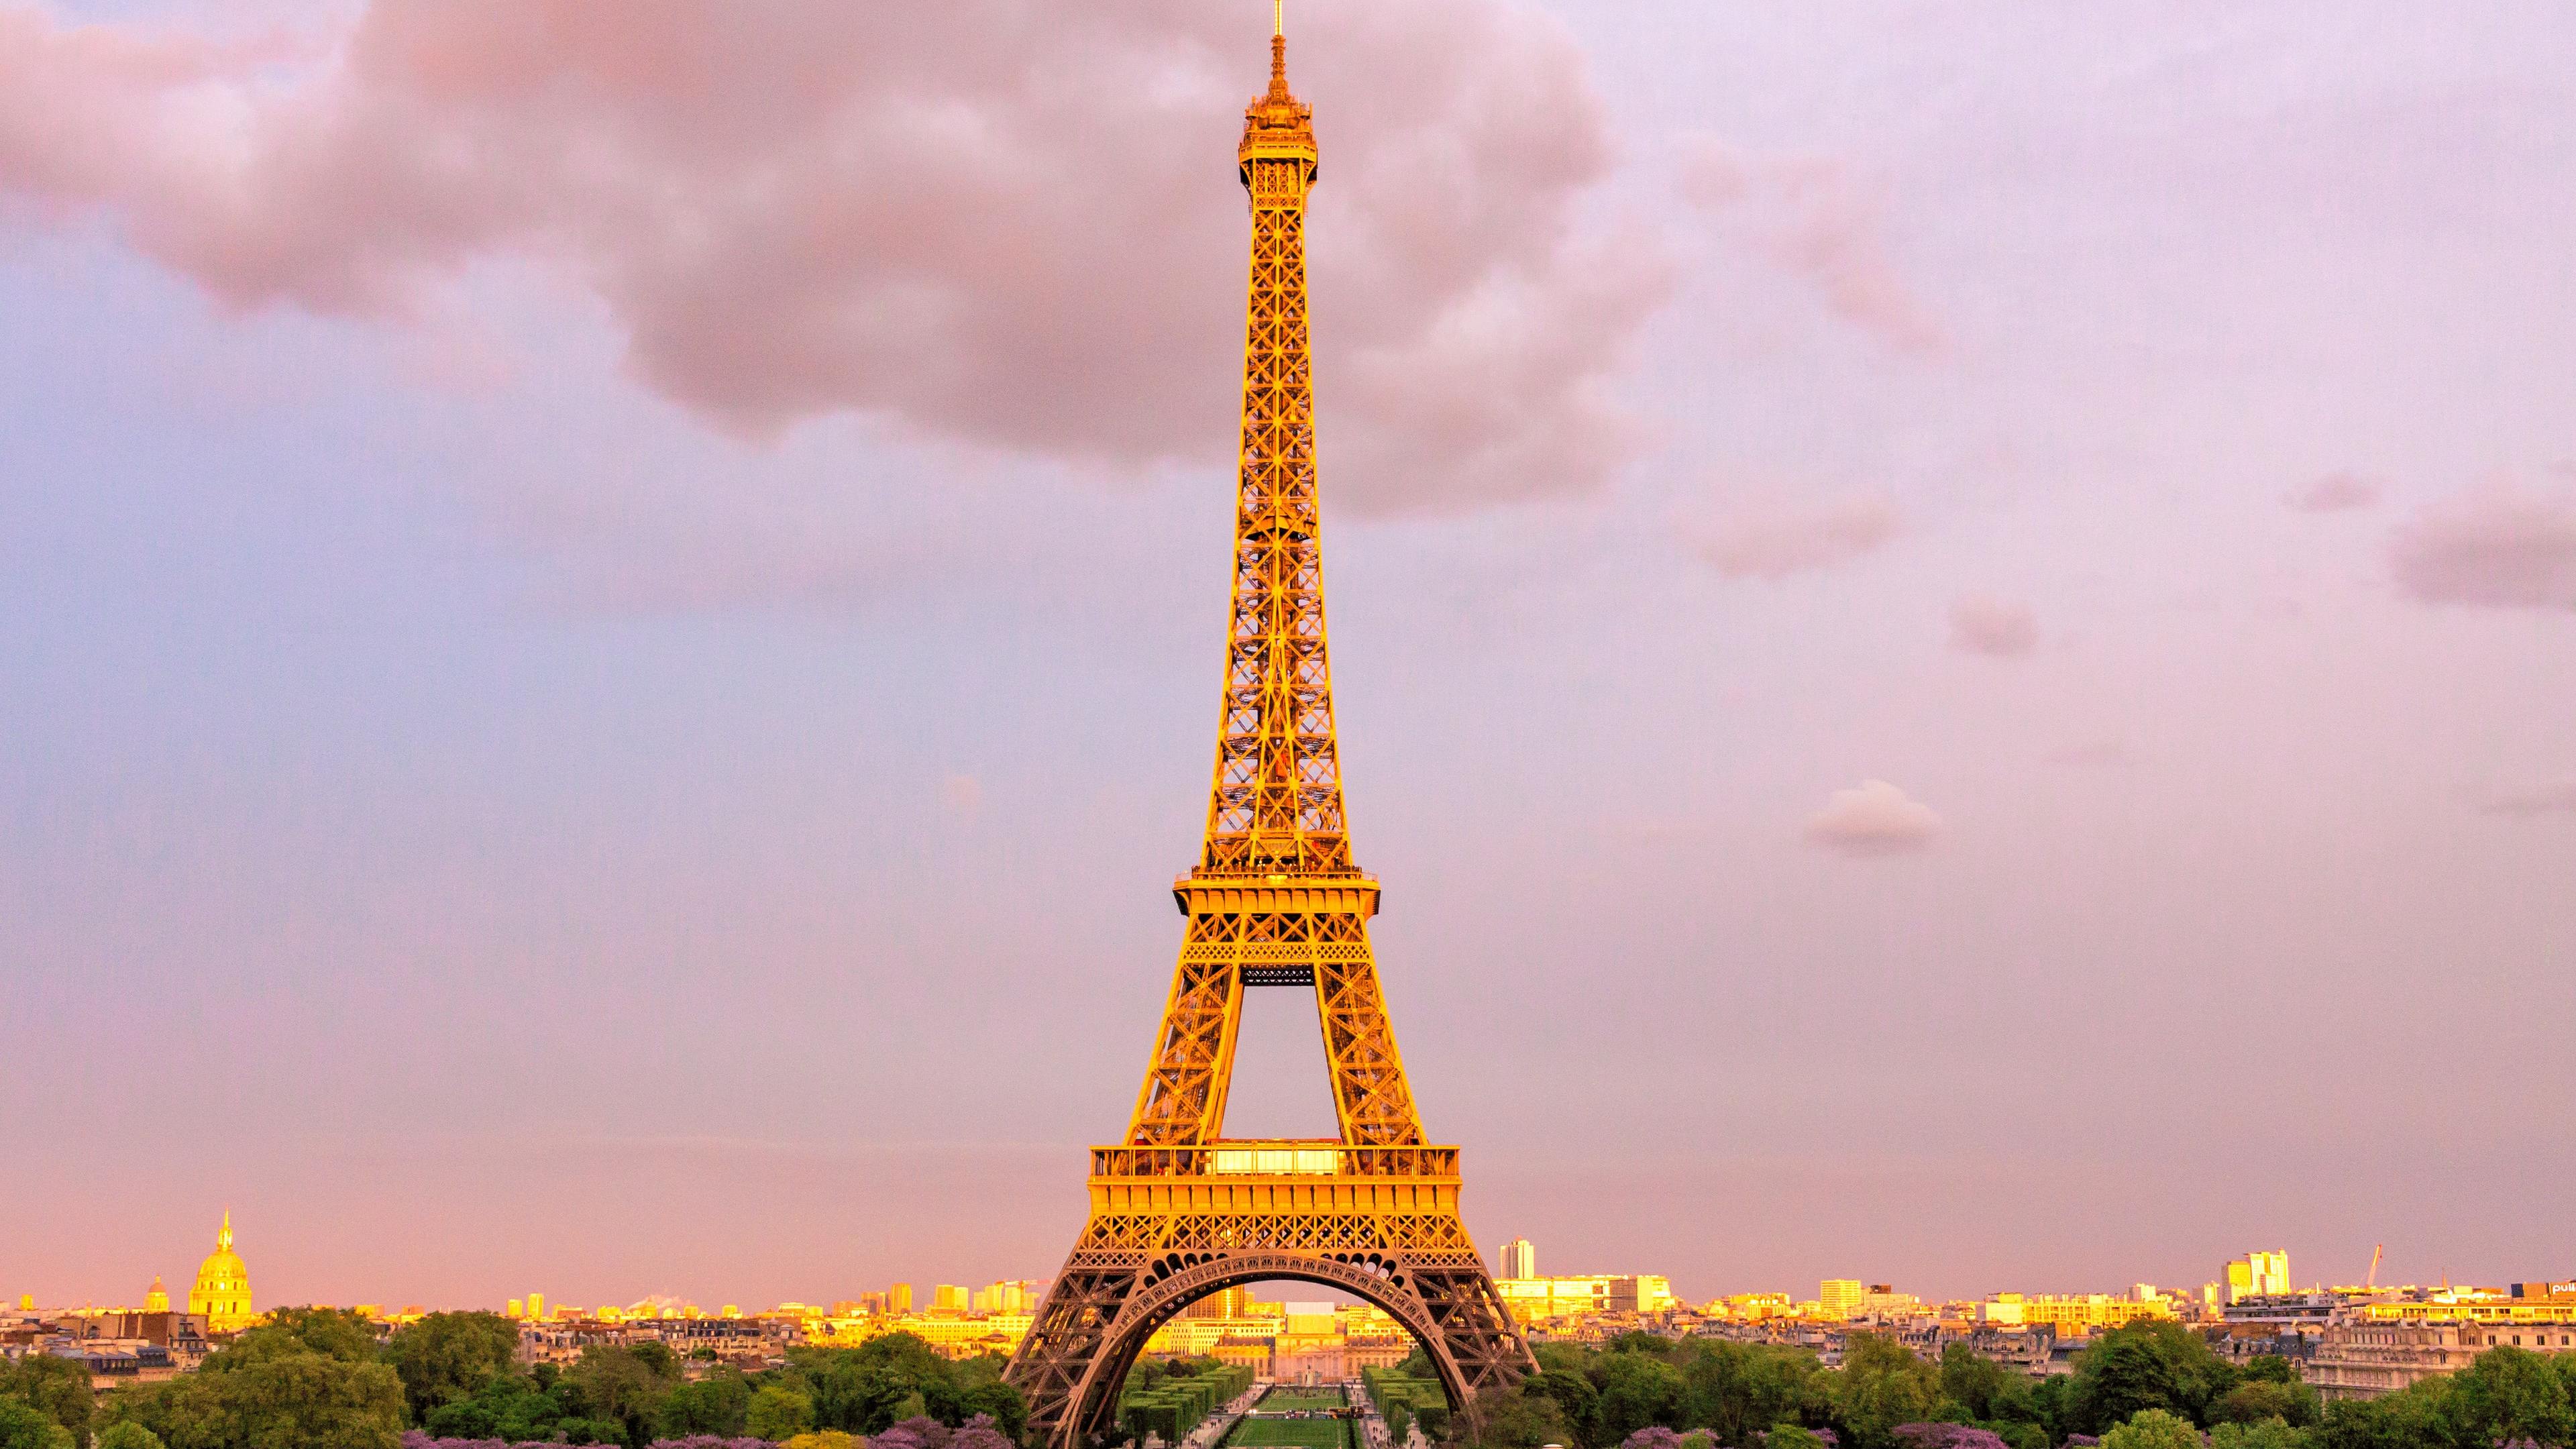 eiffel tower in paris 1546277765 - Eiffel Tower In Paris - world wallpapers, paris wallpapers, hd-wallpapers, france wallpapers, eiffel tower wallpapers, 5k wallpapers, 4k-wallpapers